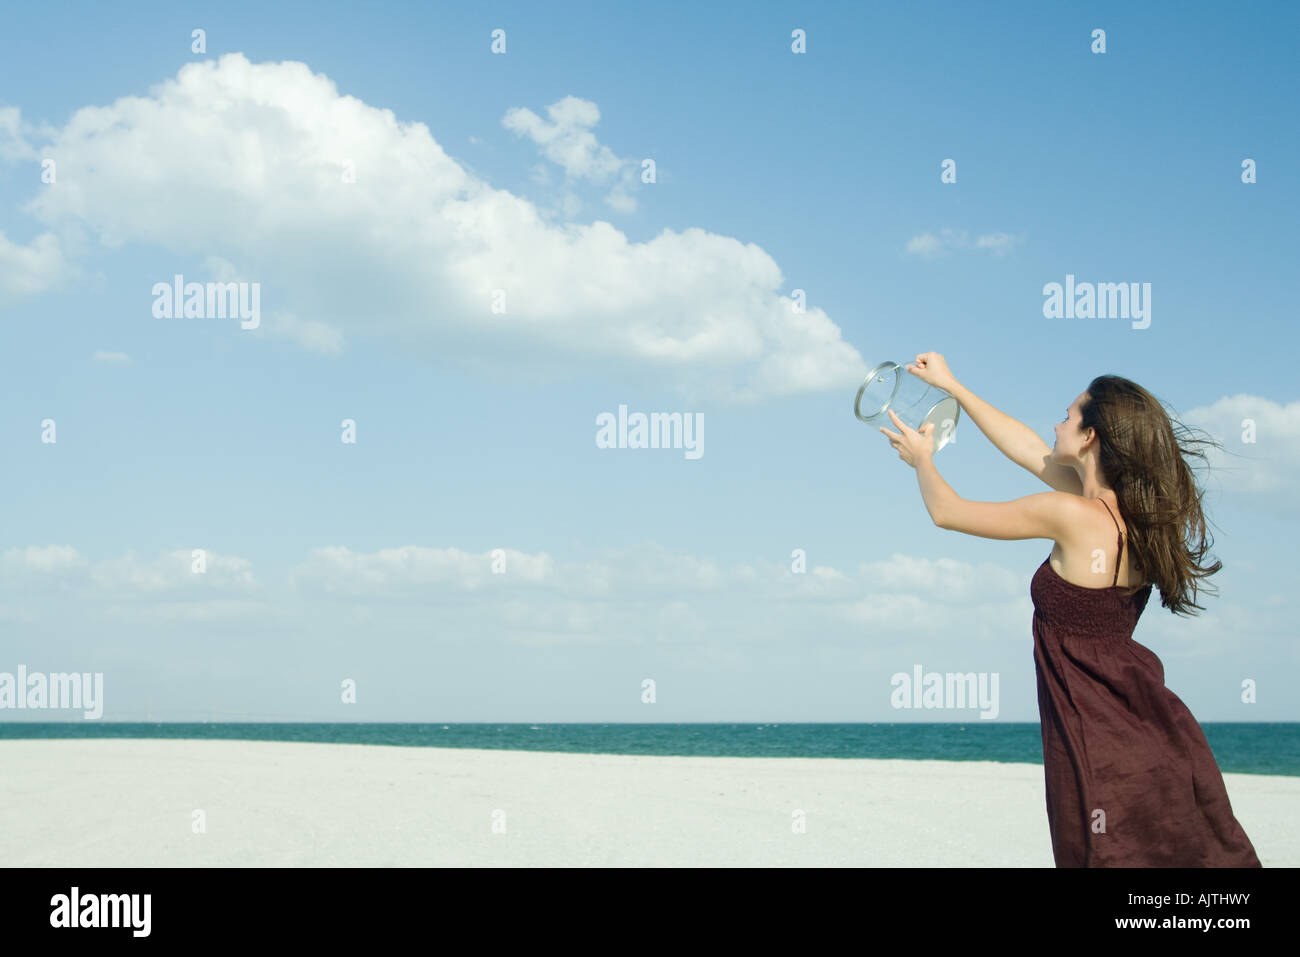 Frau am Strand stehen, hält klare Container, Freigabe von Wolken, optische Täuschung Stockfoto